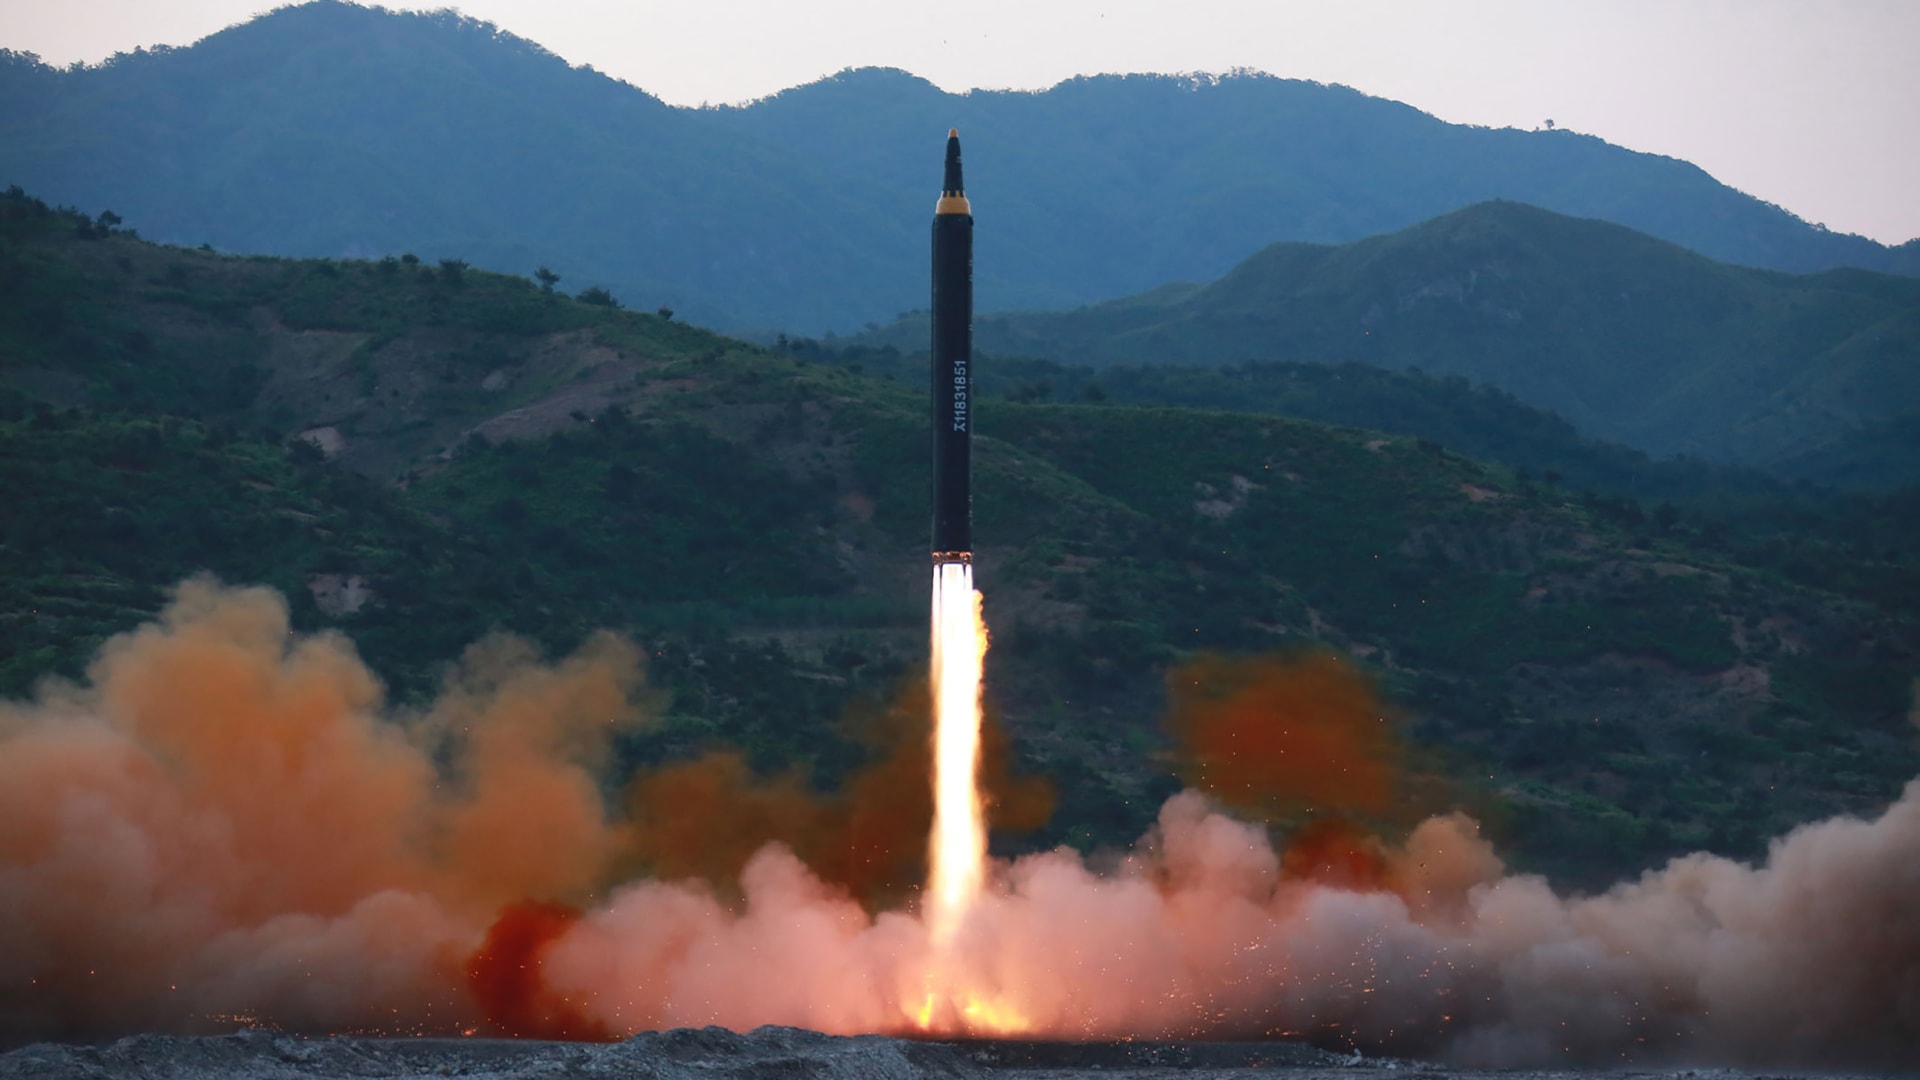 مع تطورها عبر السنين.. ما مدى قوة أسلحة كوريا الشمالية وما الضرر الذي قد تحدثه؟